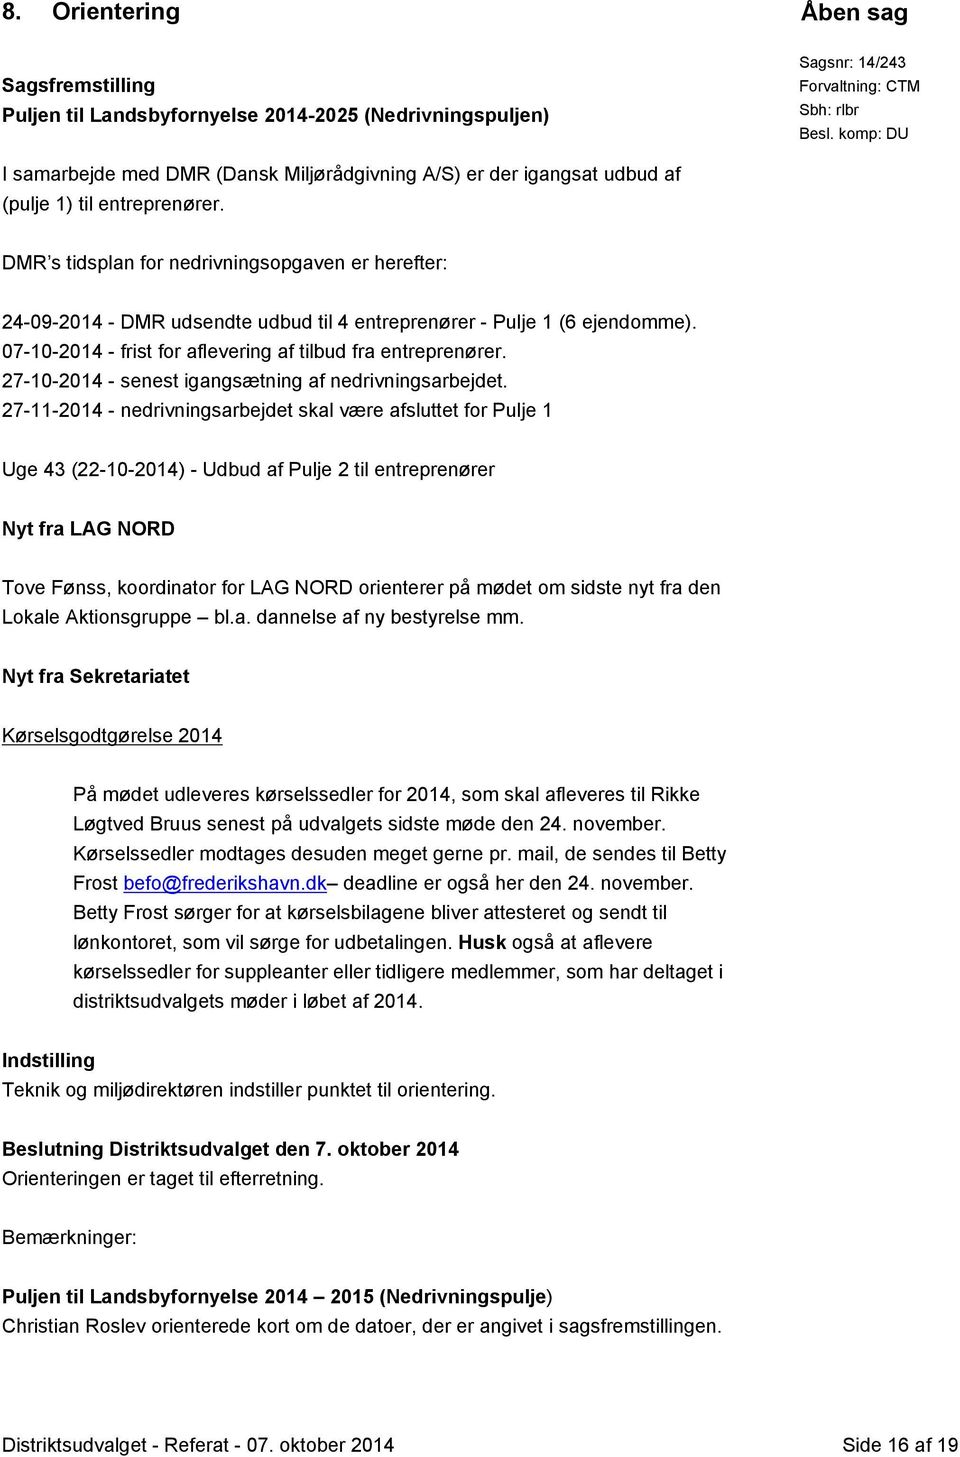 DMR s tidsplan for nedrivningsopgaven er herefter: 24-09-2014 - DMR udsendte udbud til 4 entreprenører - Pulje 1 (6 ejendomme). 07-10-2014 - frist for aflevering af tilbud fra entreprenører.